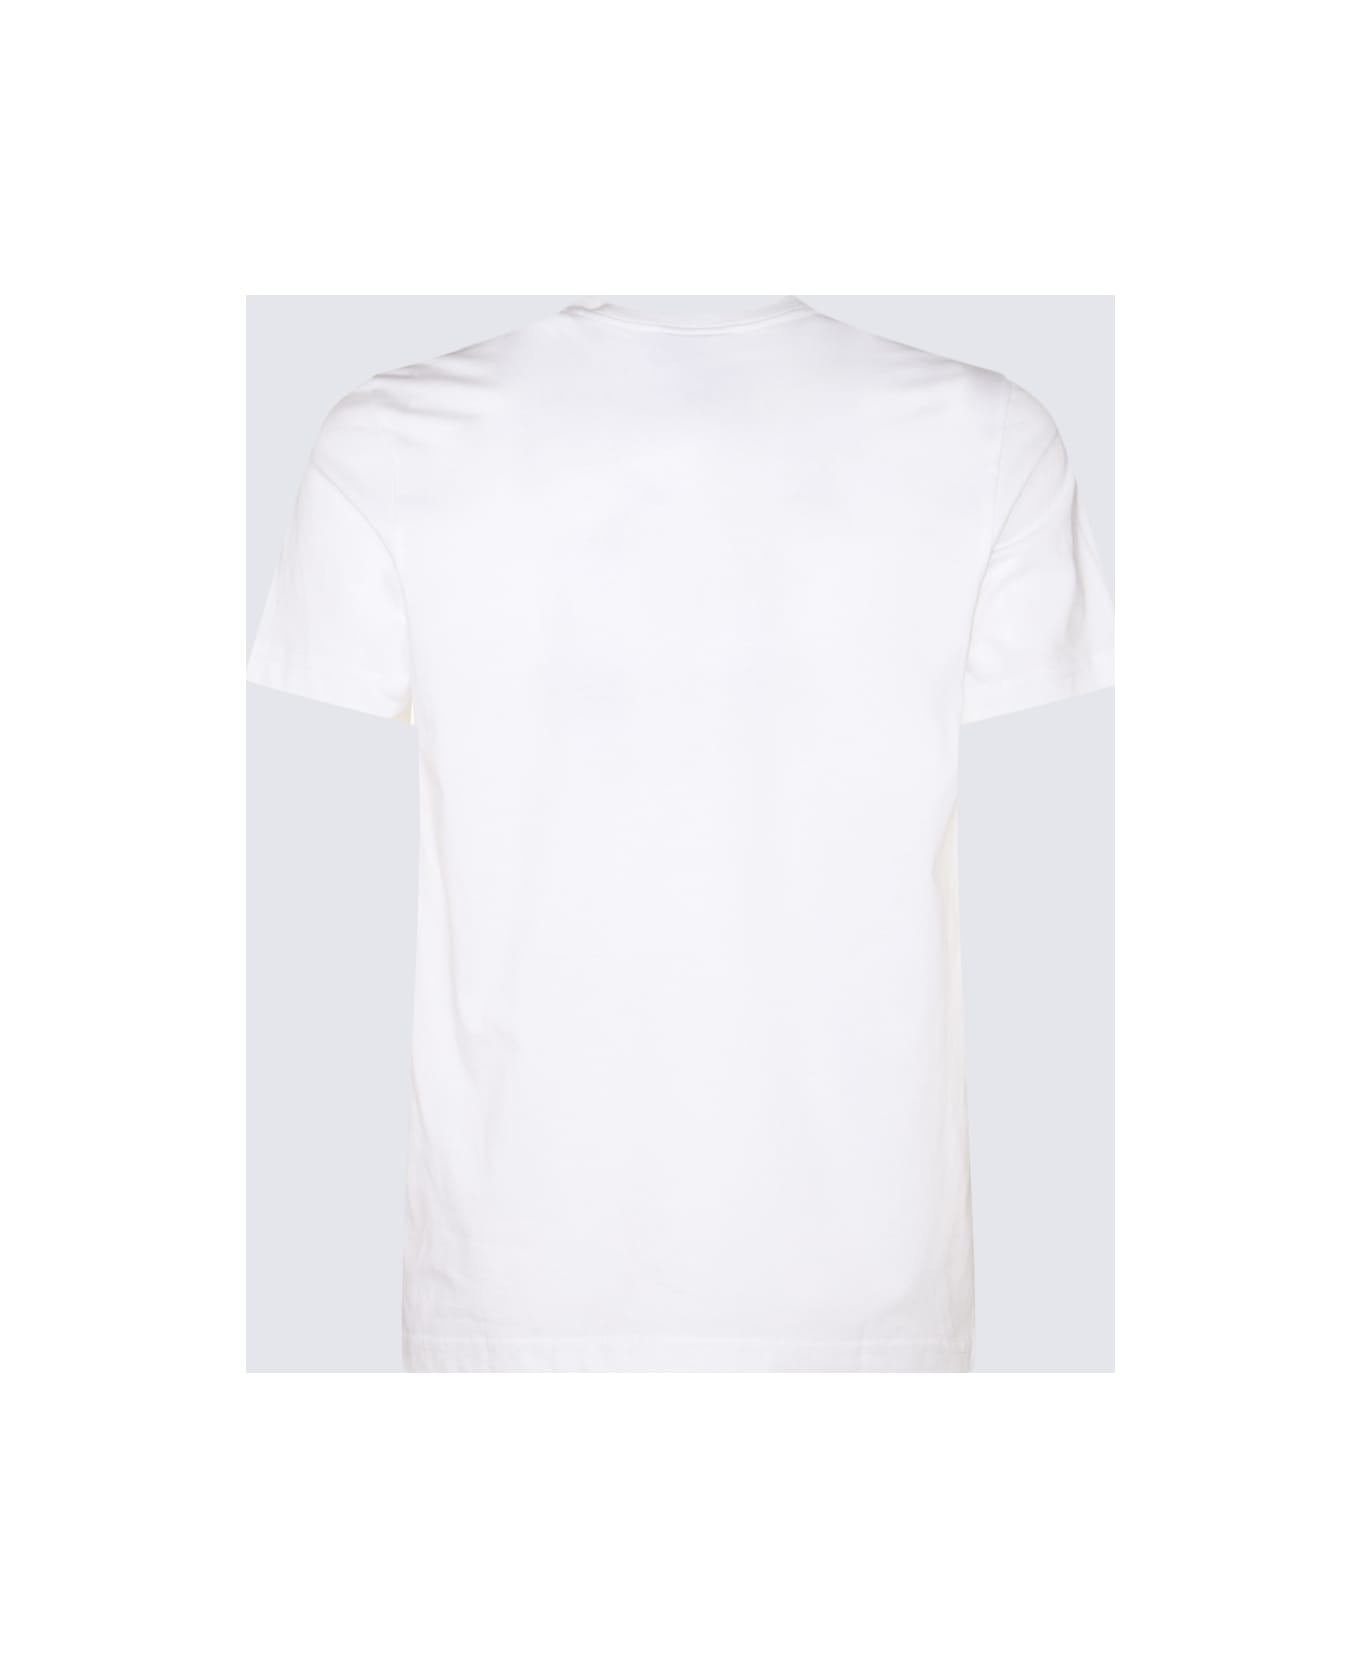 Paul Smith White Cotton T-shirt - White